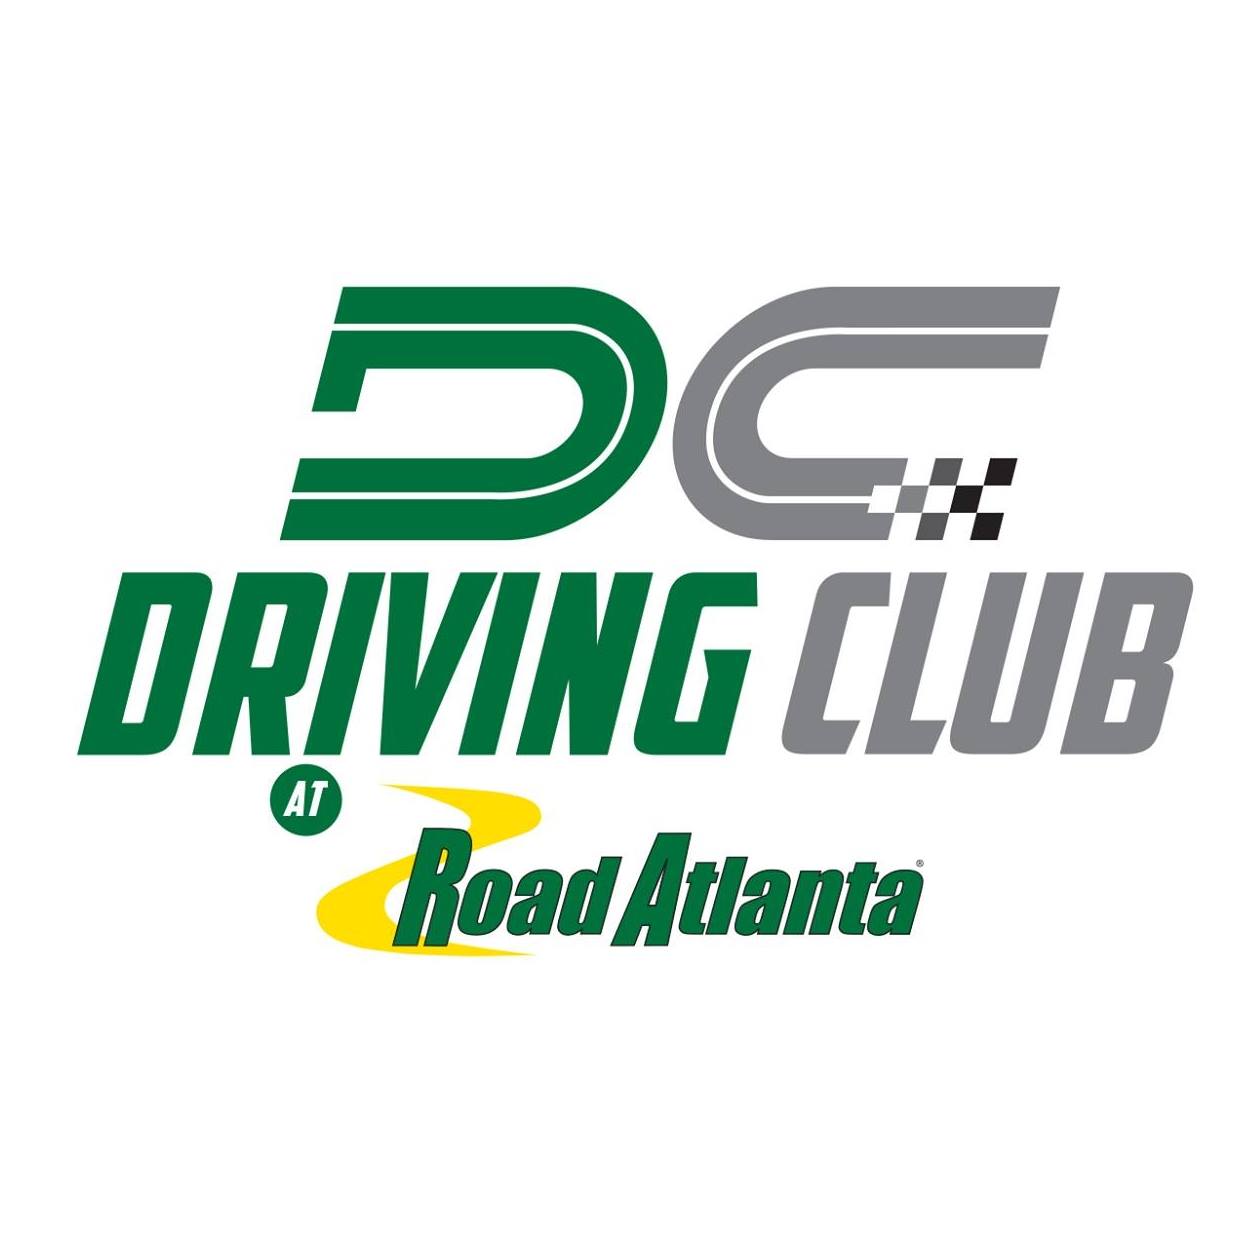 The Driving Club at Road Atlanta